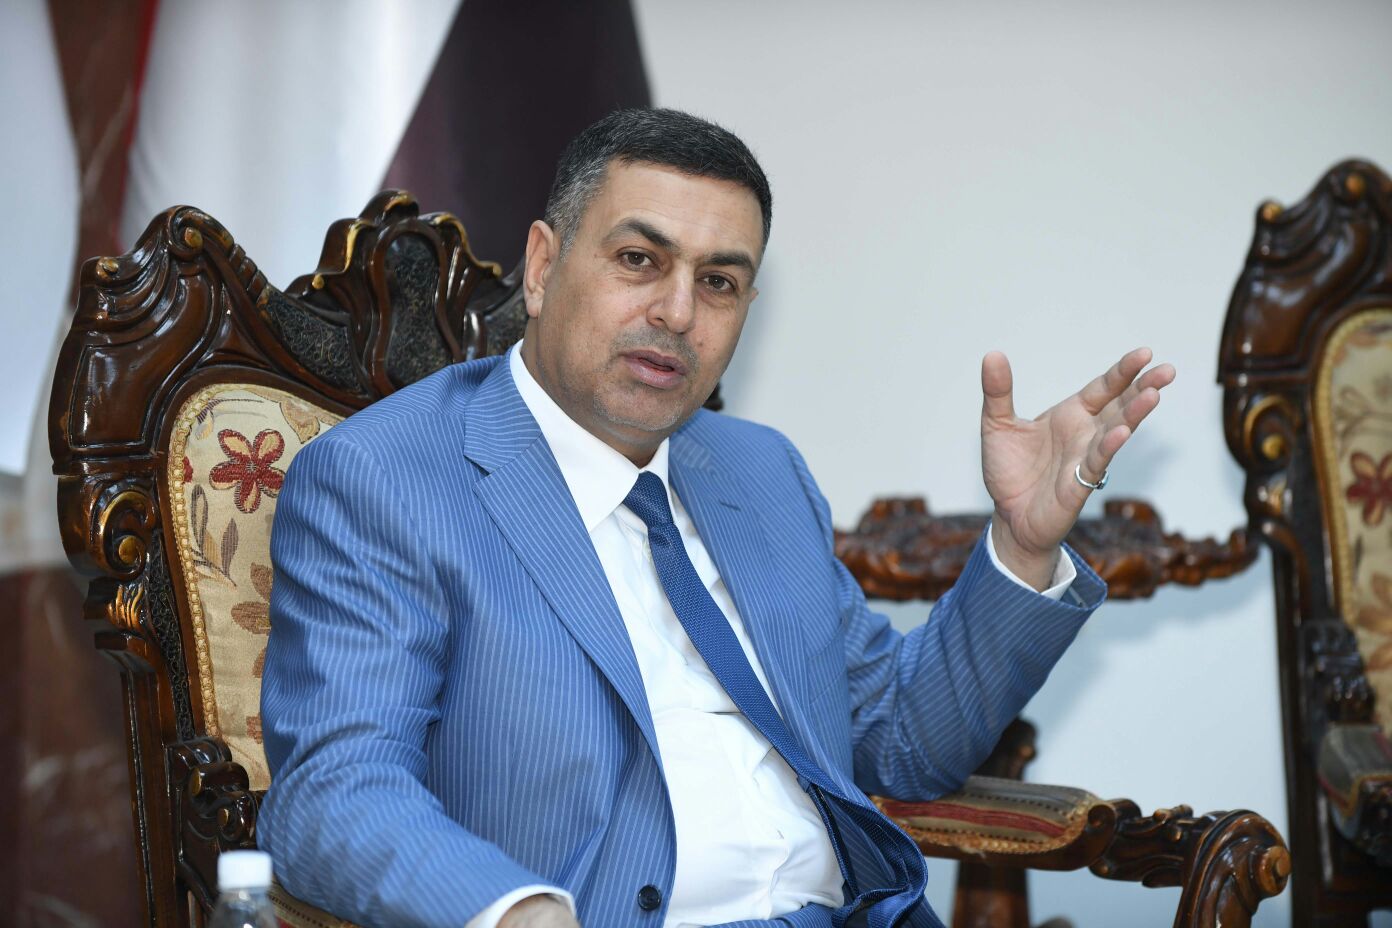 Governor of the Southern Iraqi city, Asaad Al-Eidani